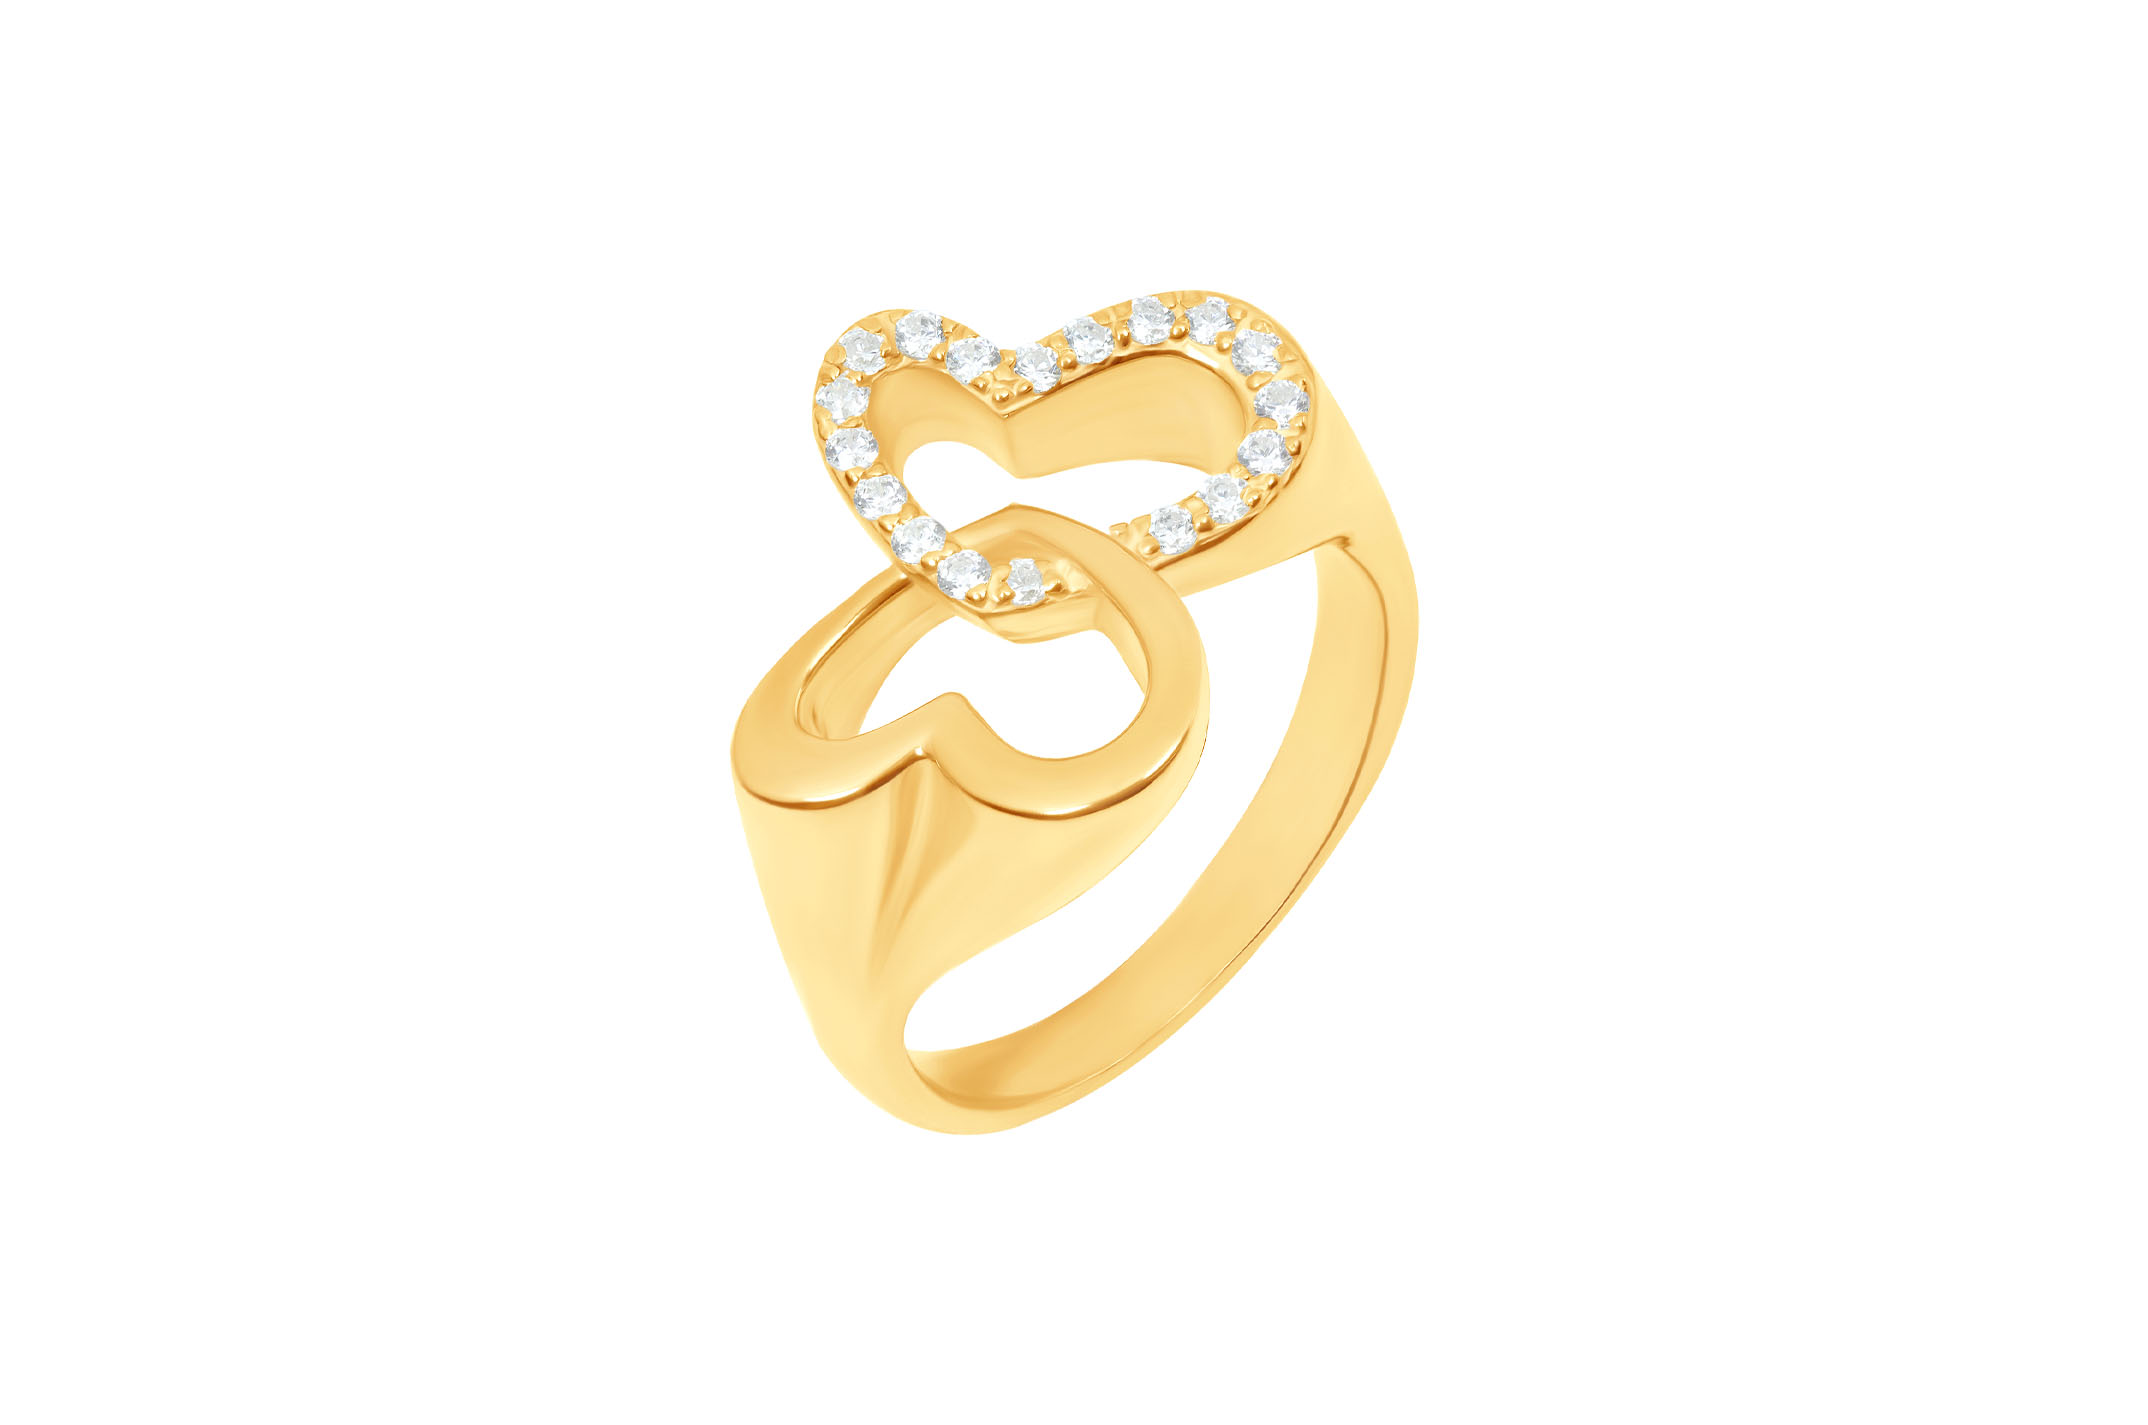 Joia: anel;Material: prata 925;Pedra: zircónias;Peso: 7.2 gr;Cor: amarelo;Género: mulher